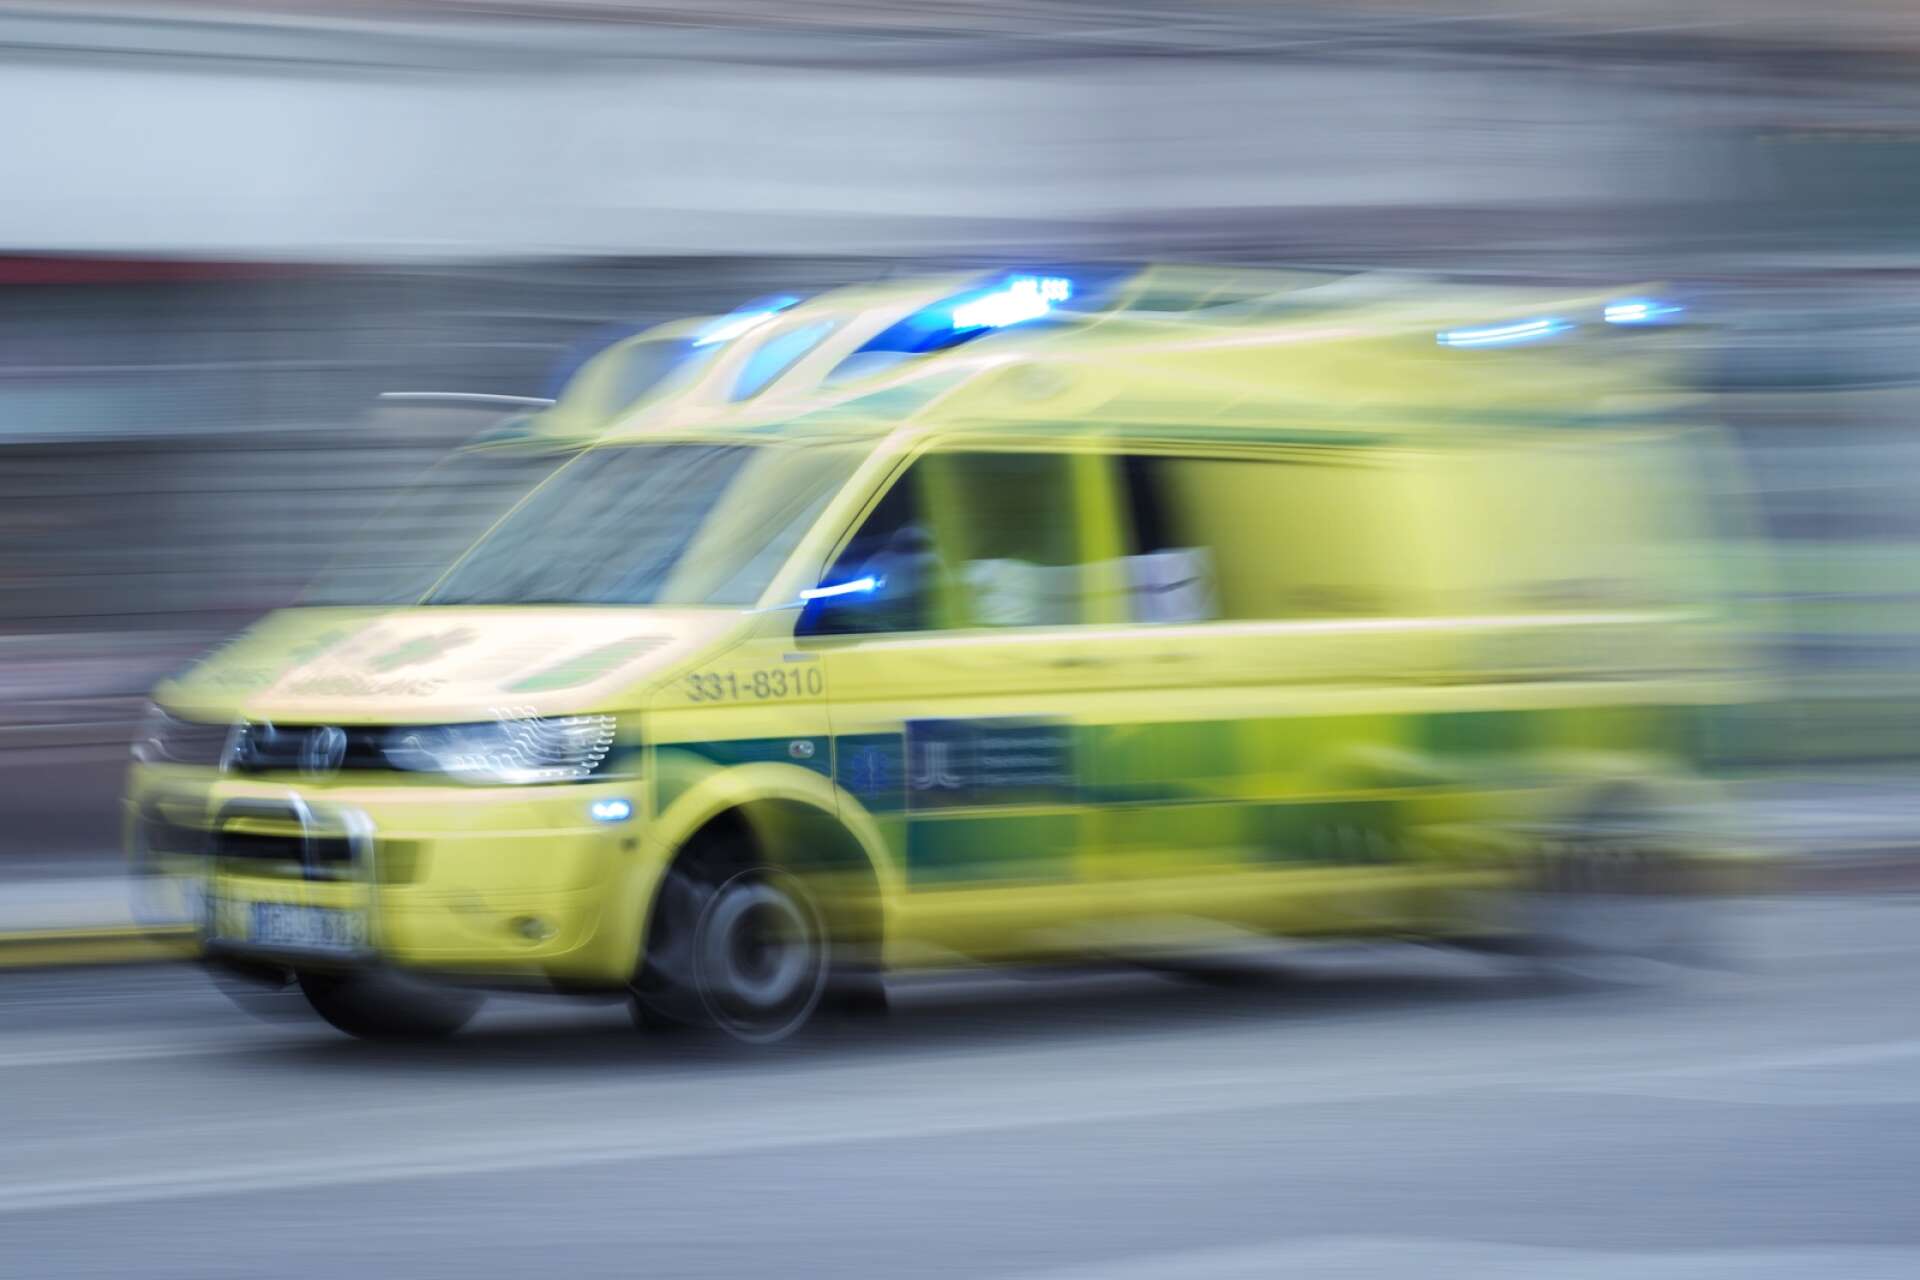 Mindre personal i tjänst har lett till att ambulanser har fått stå i sommar.